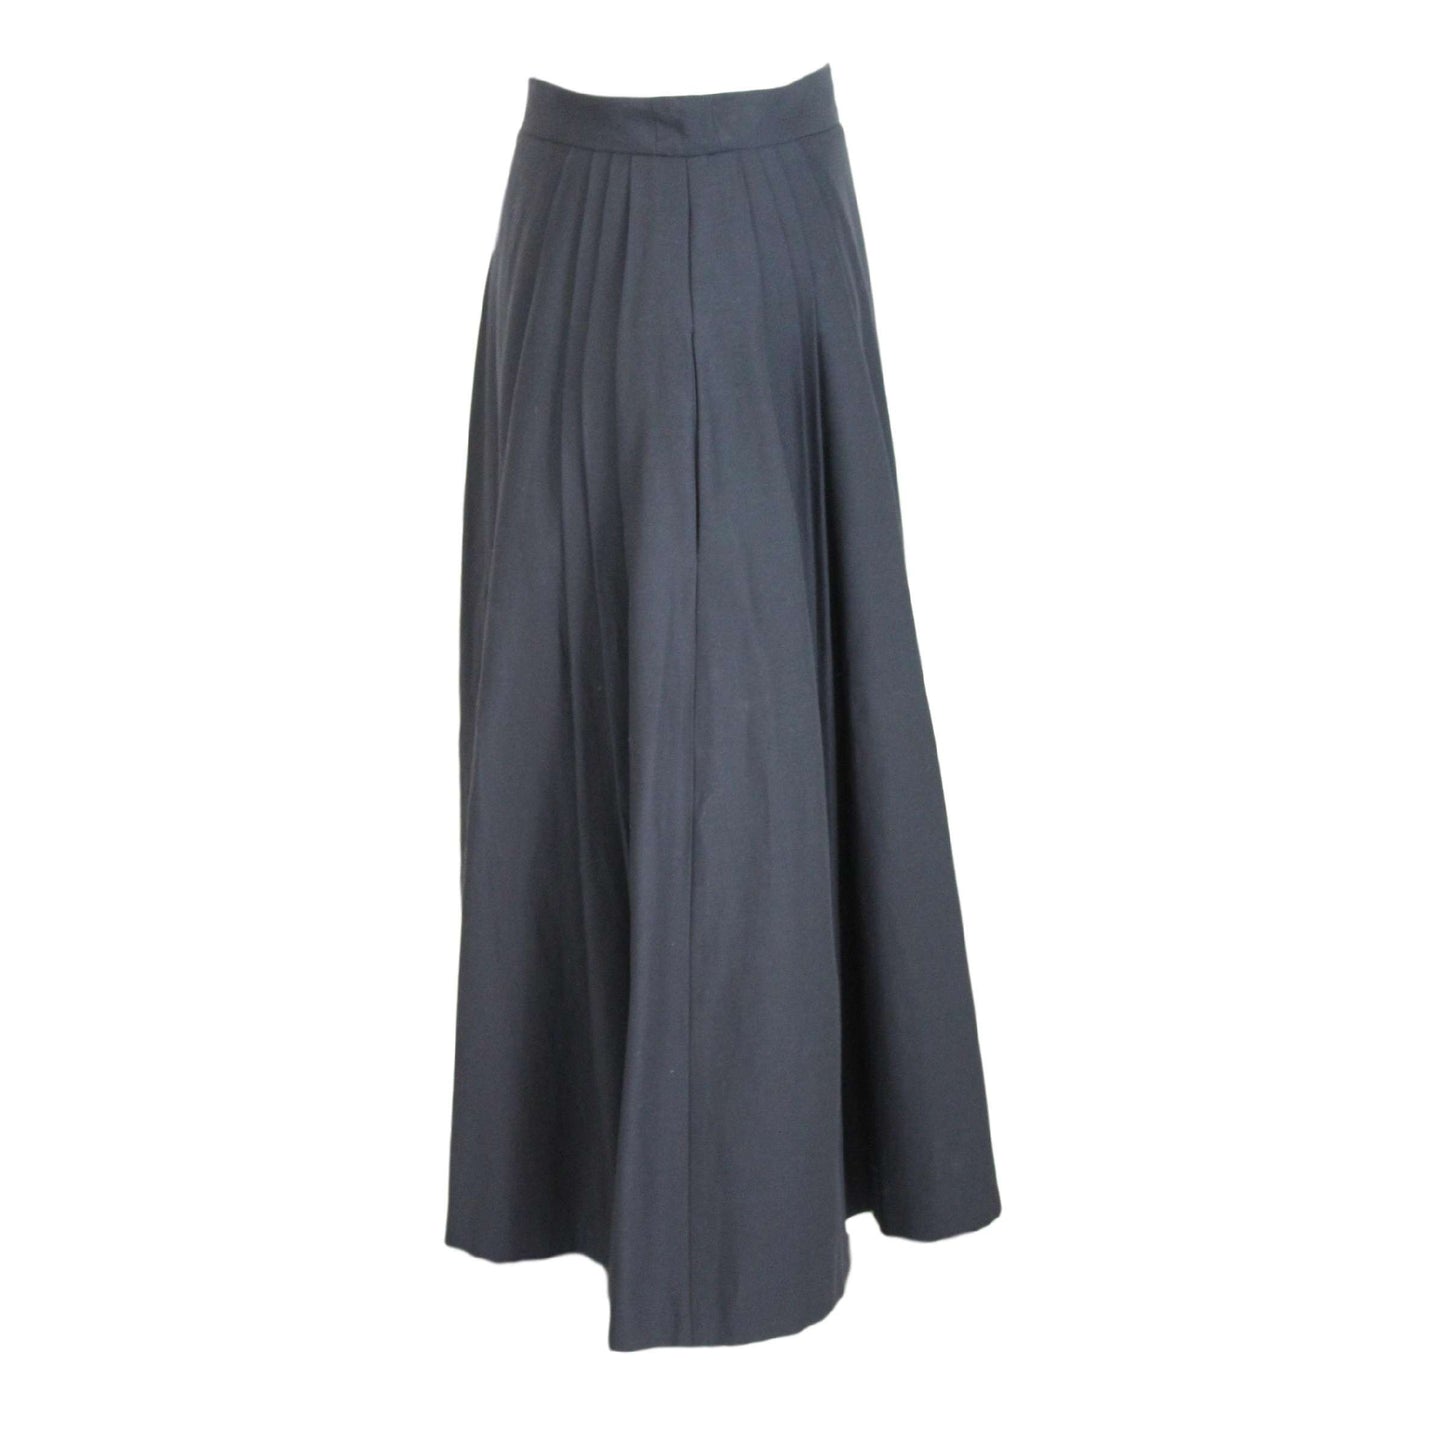 Mangano Black Cotton Long Skirt